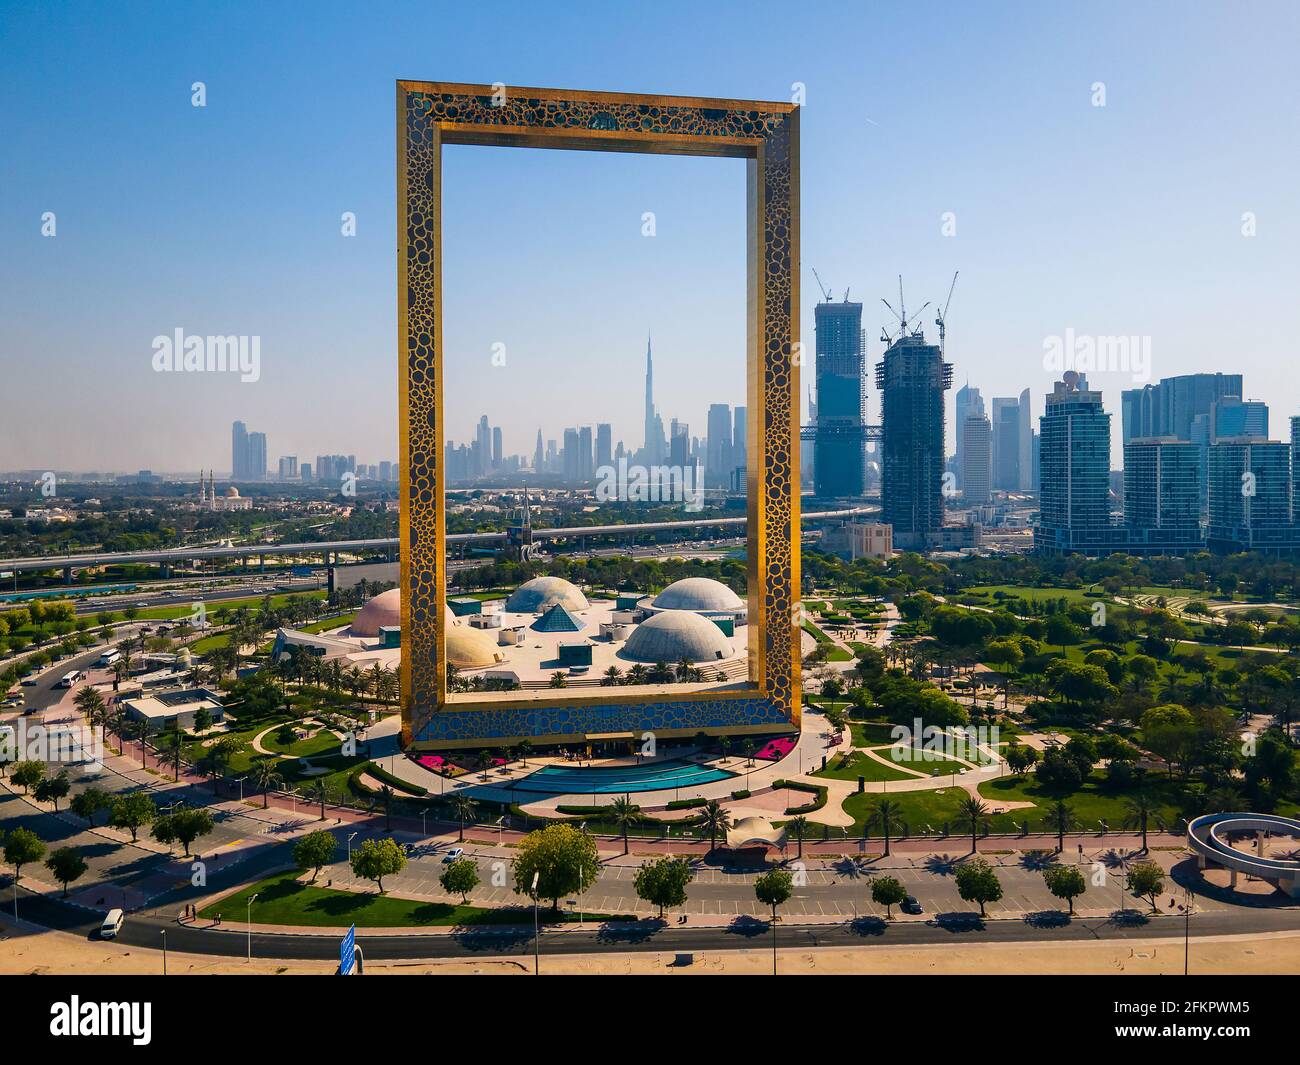 Dubai, Emirati Arabi Uniti, 19 aprile 2021: Skyline di Dubai visto attraverso il Dubai Frame Building con il parco Zabeel e vista aerea dello skyline di Dubai Foto Stock